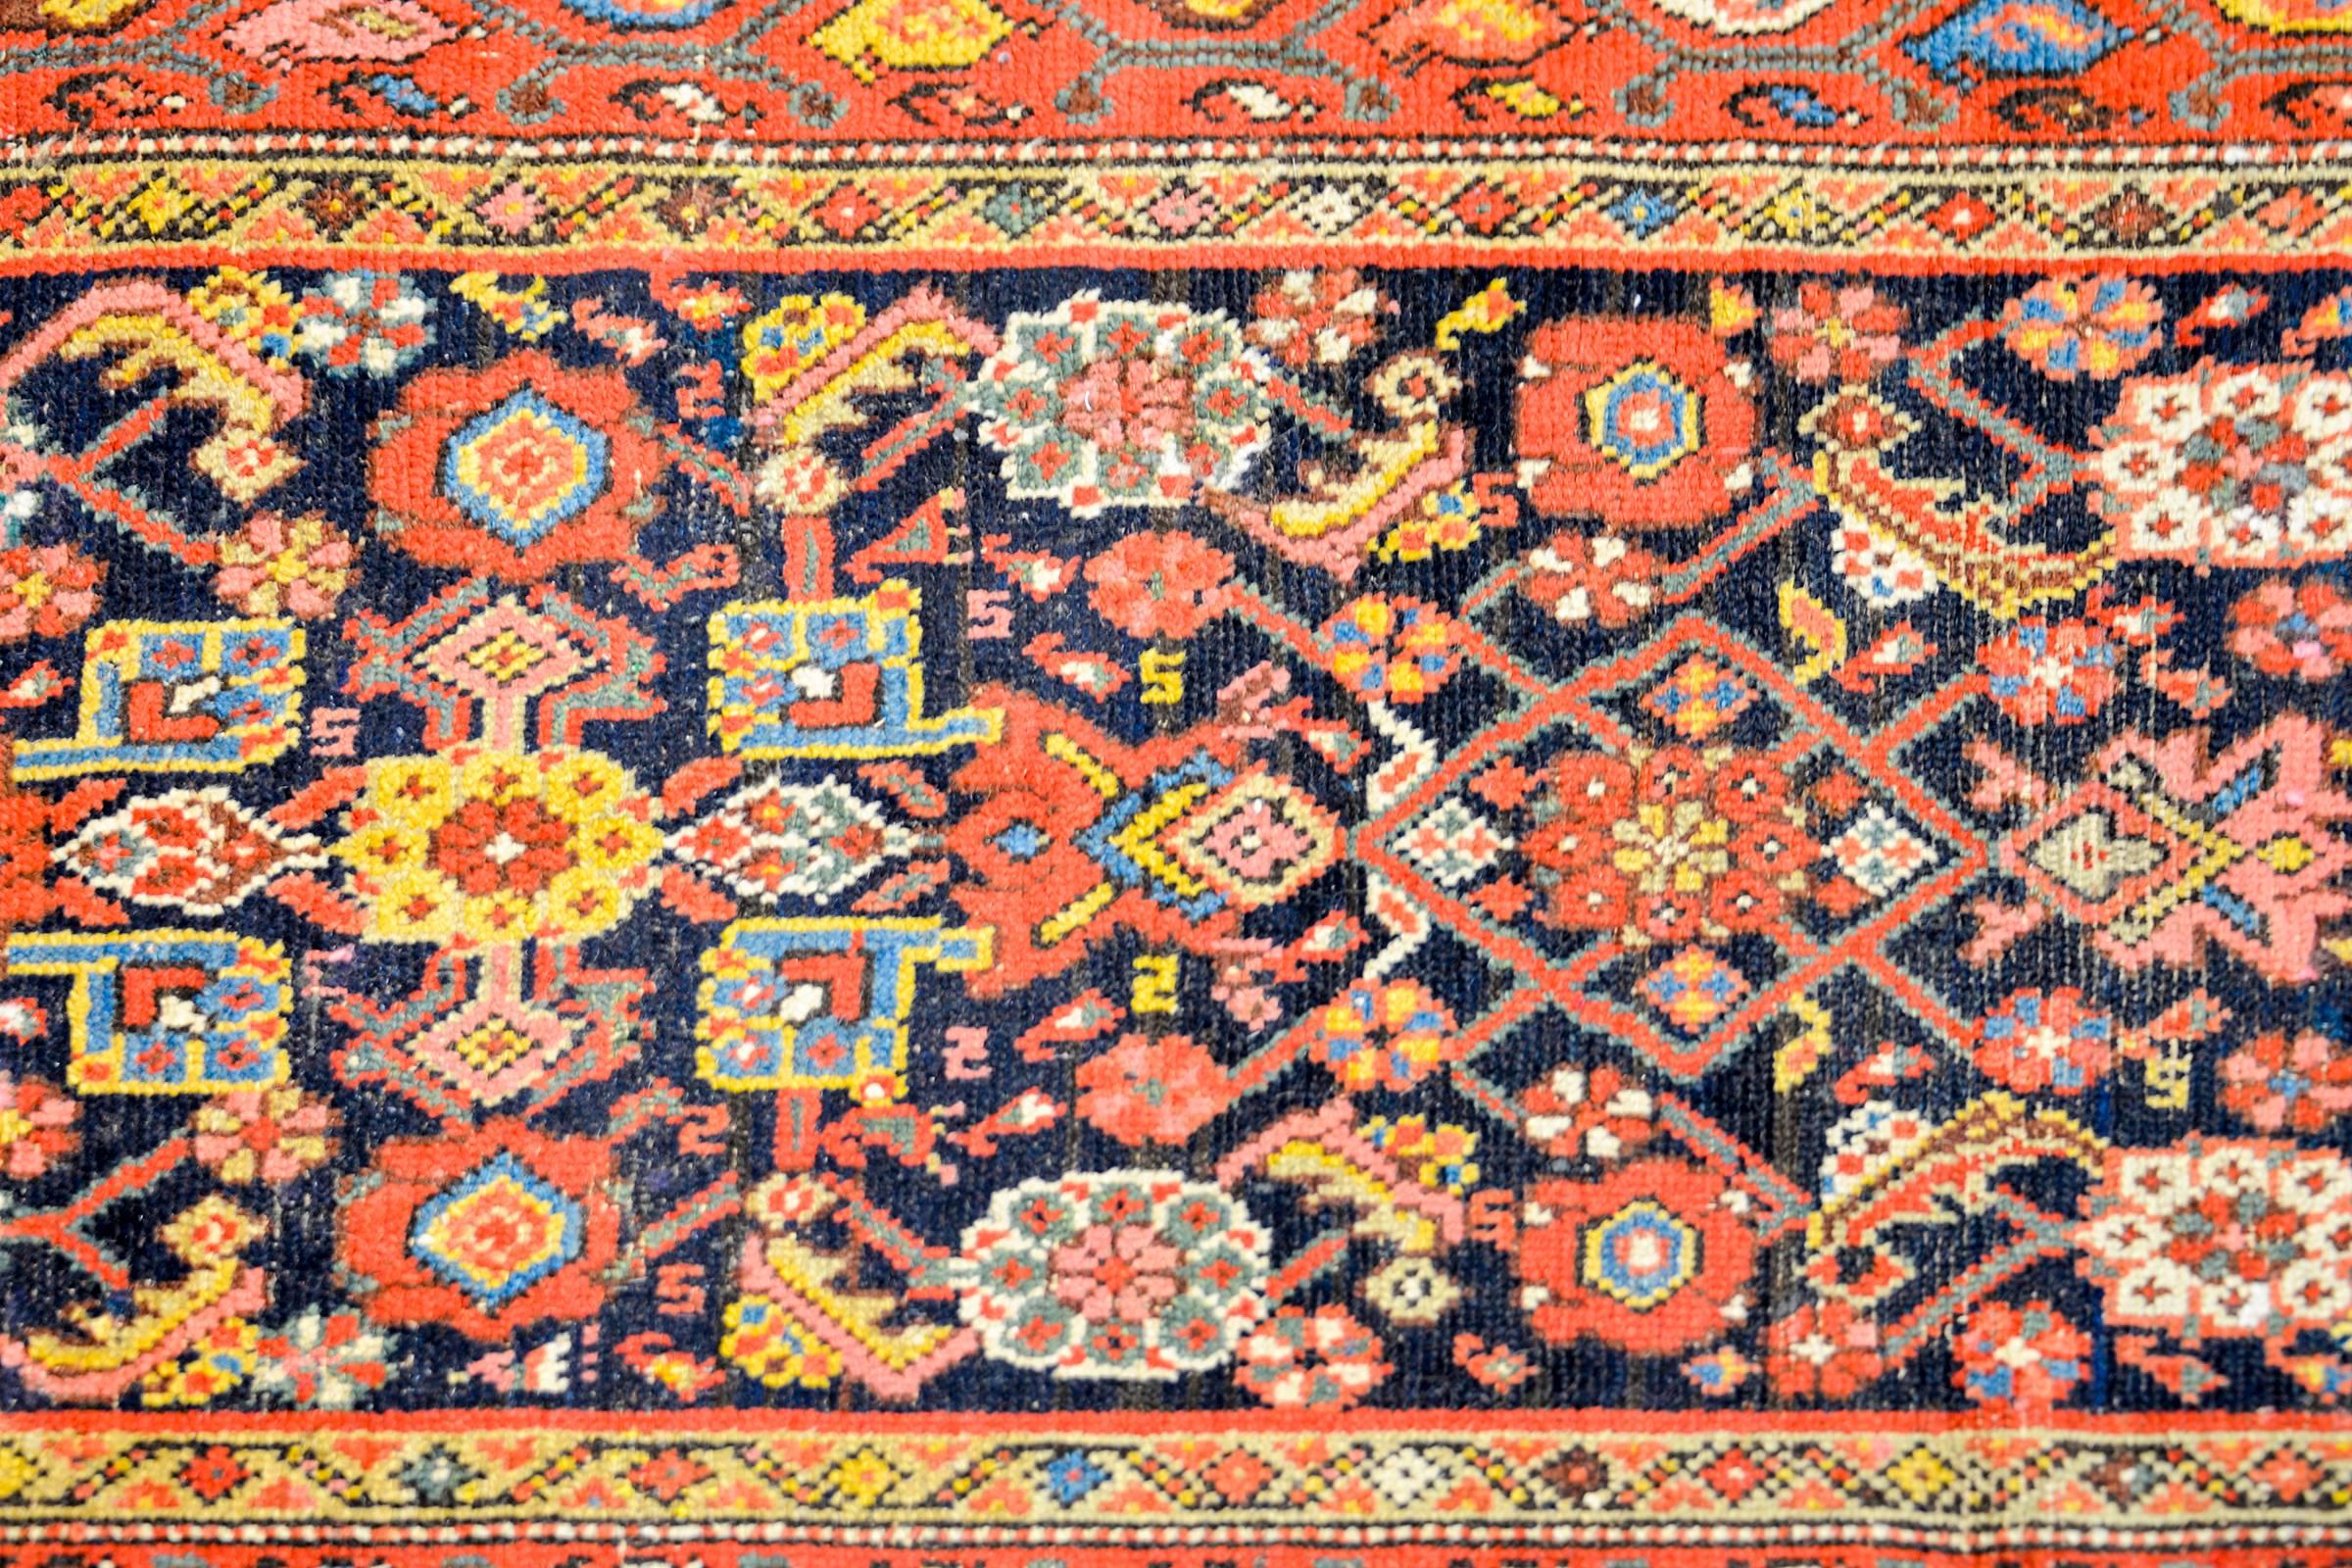 Magnifique tapis de course Persan Malayer du début du 20ème siècle, avec un motif floral et de vigne multicolore en treillis, tissé en laine de couleur indigo, cramoisi, or et crème, sur un fond indigo foncé. La bordure est composée de quatre motifs